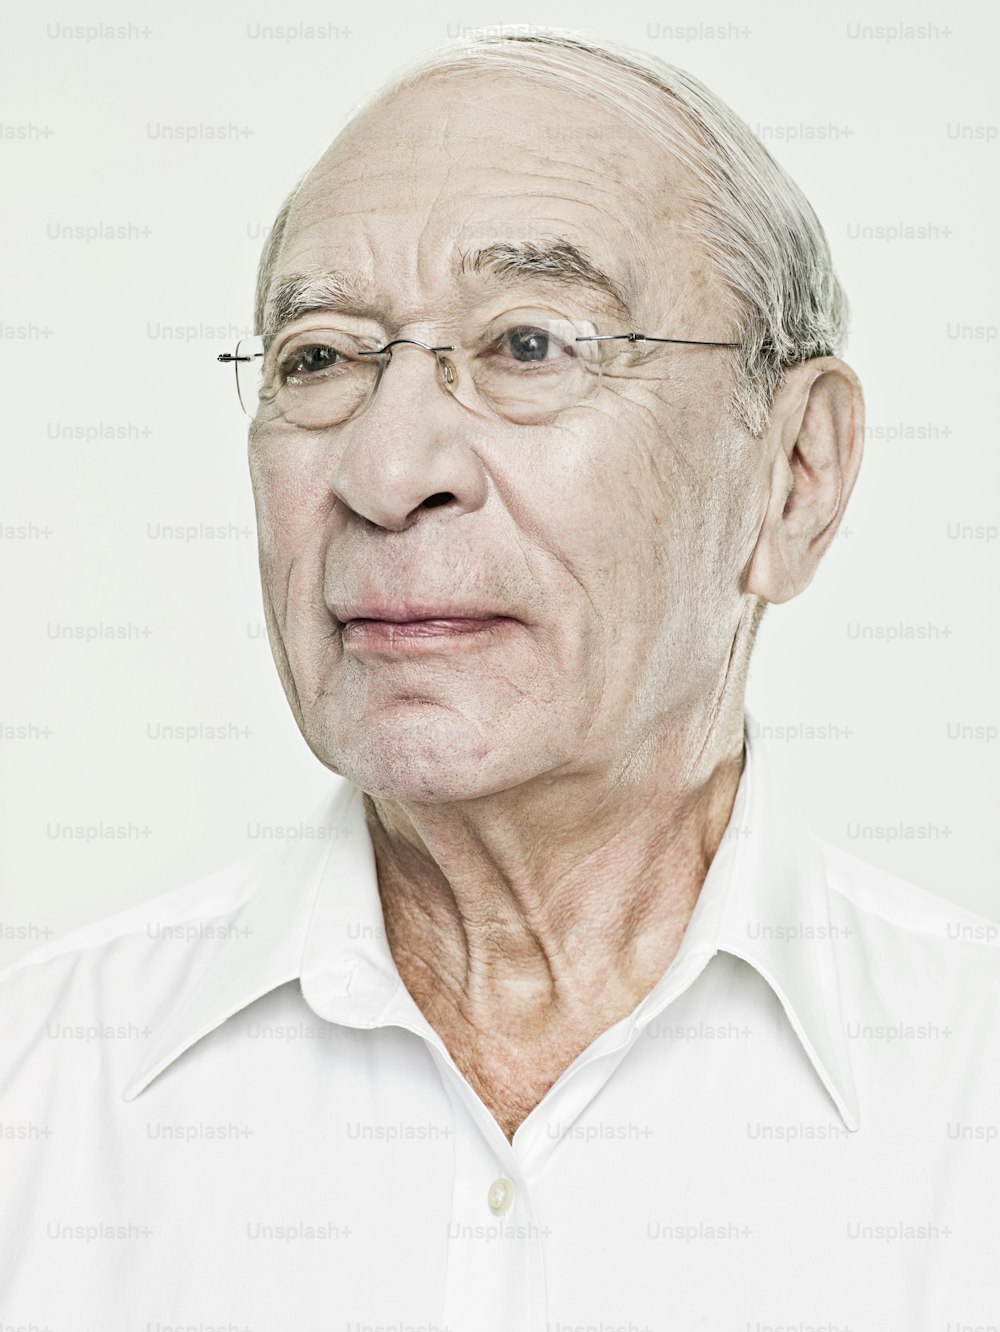 un homme âgé avec des lunettes et une chemise blanche